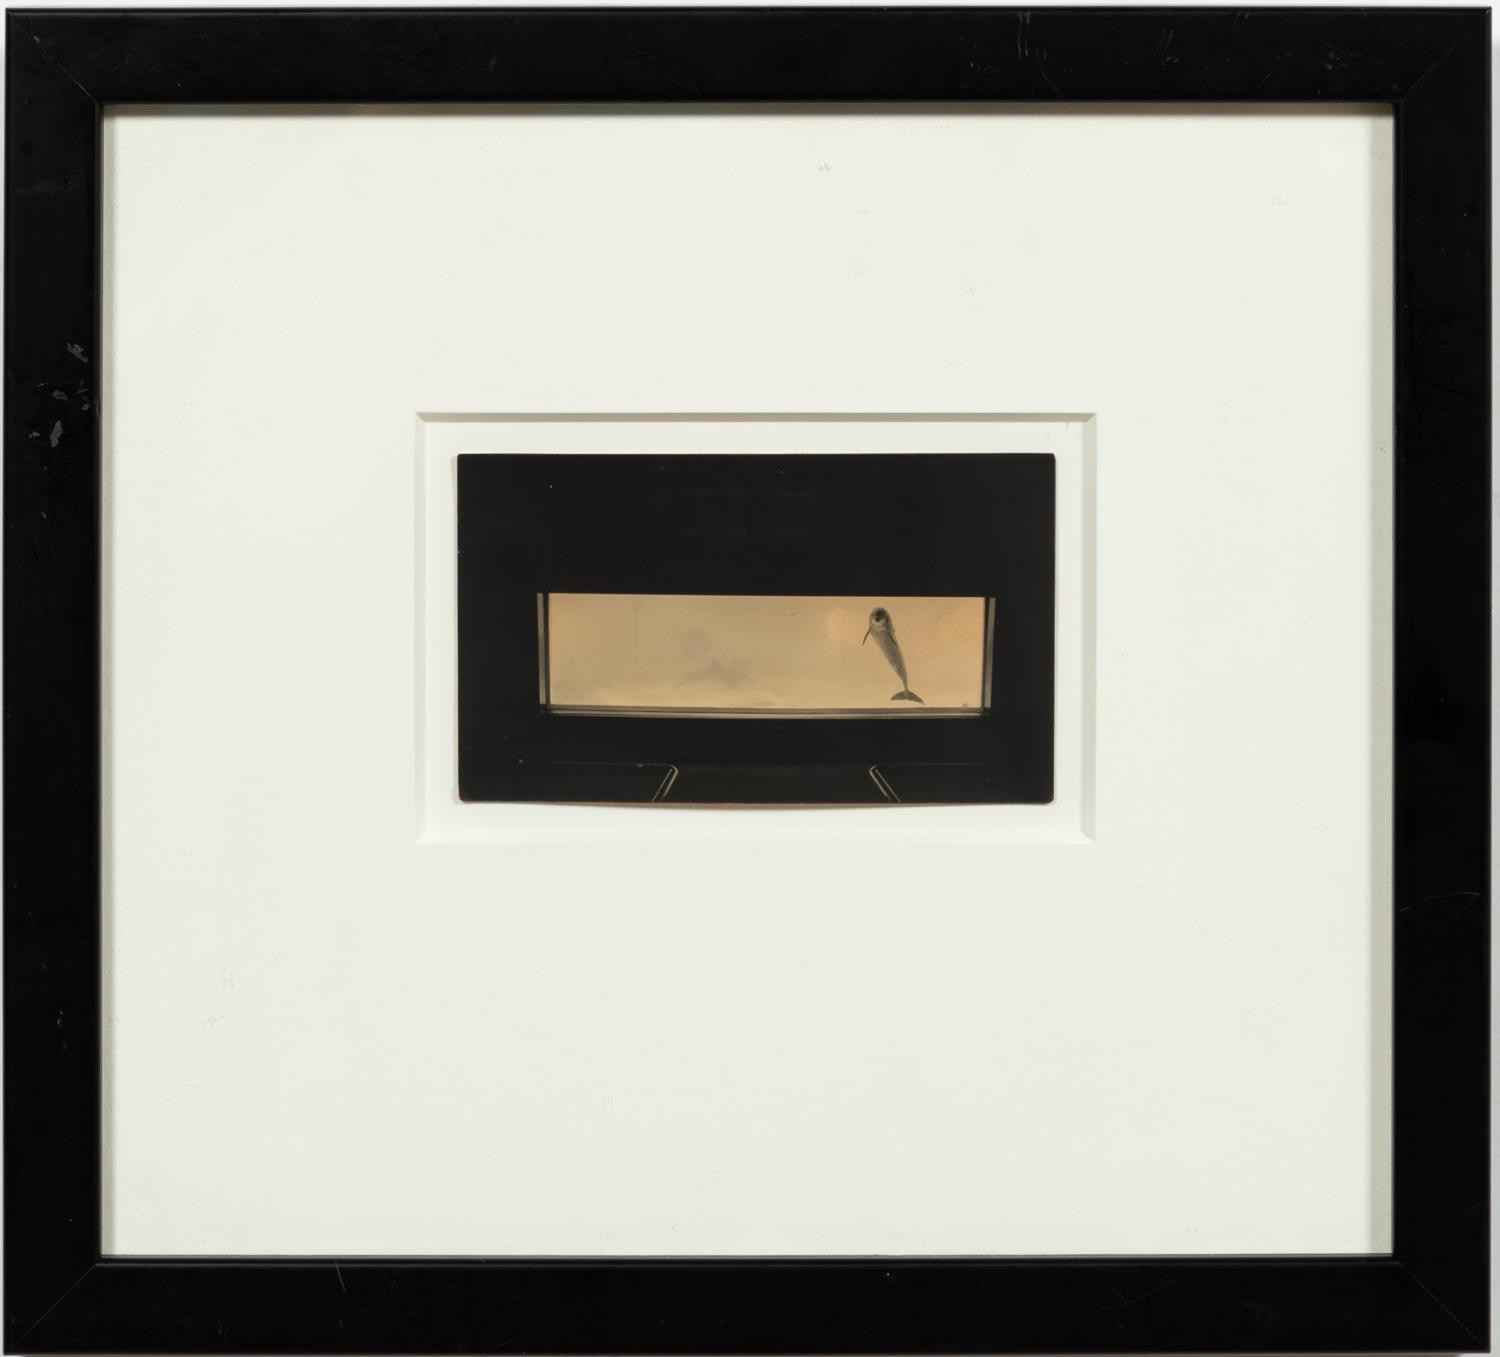 MASAO YAMAMOTO, "BOX OF KU #557"